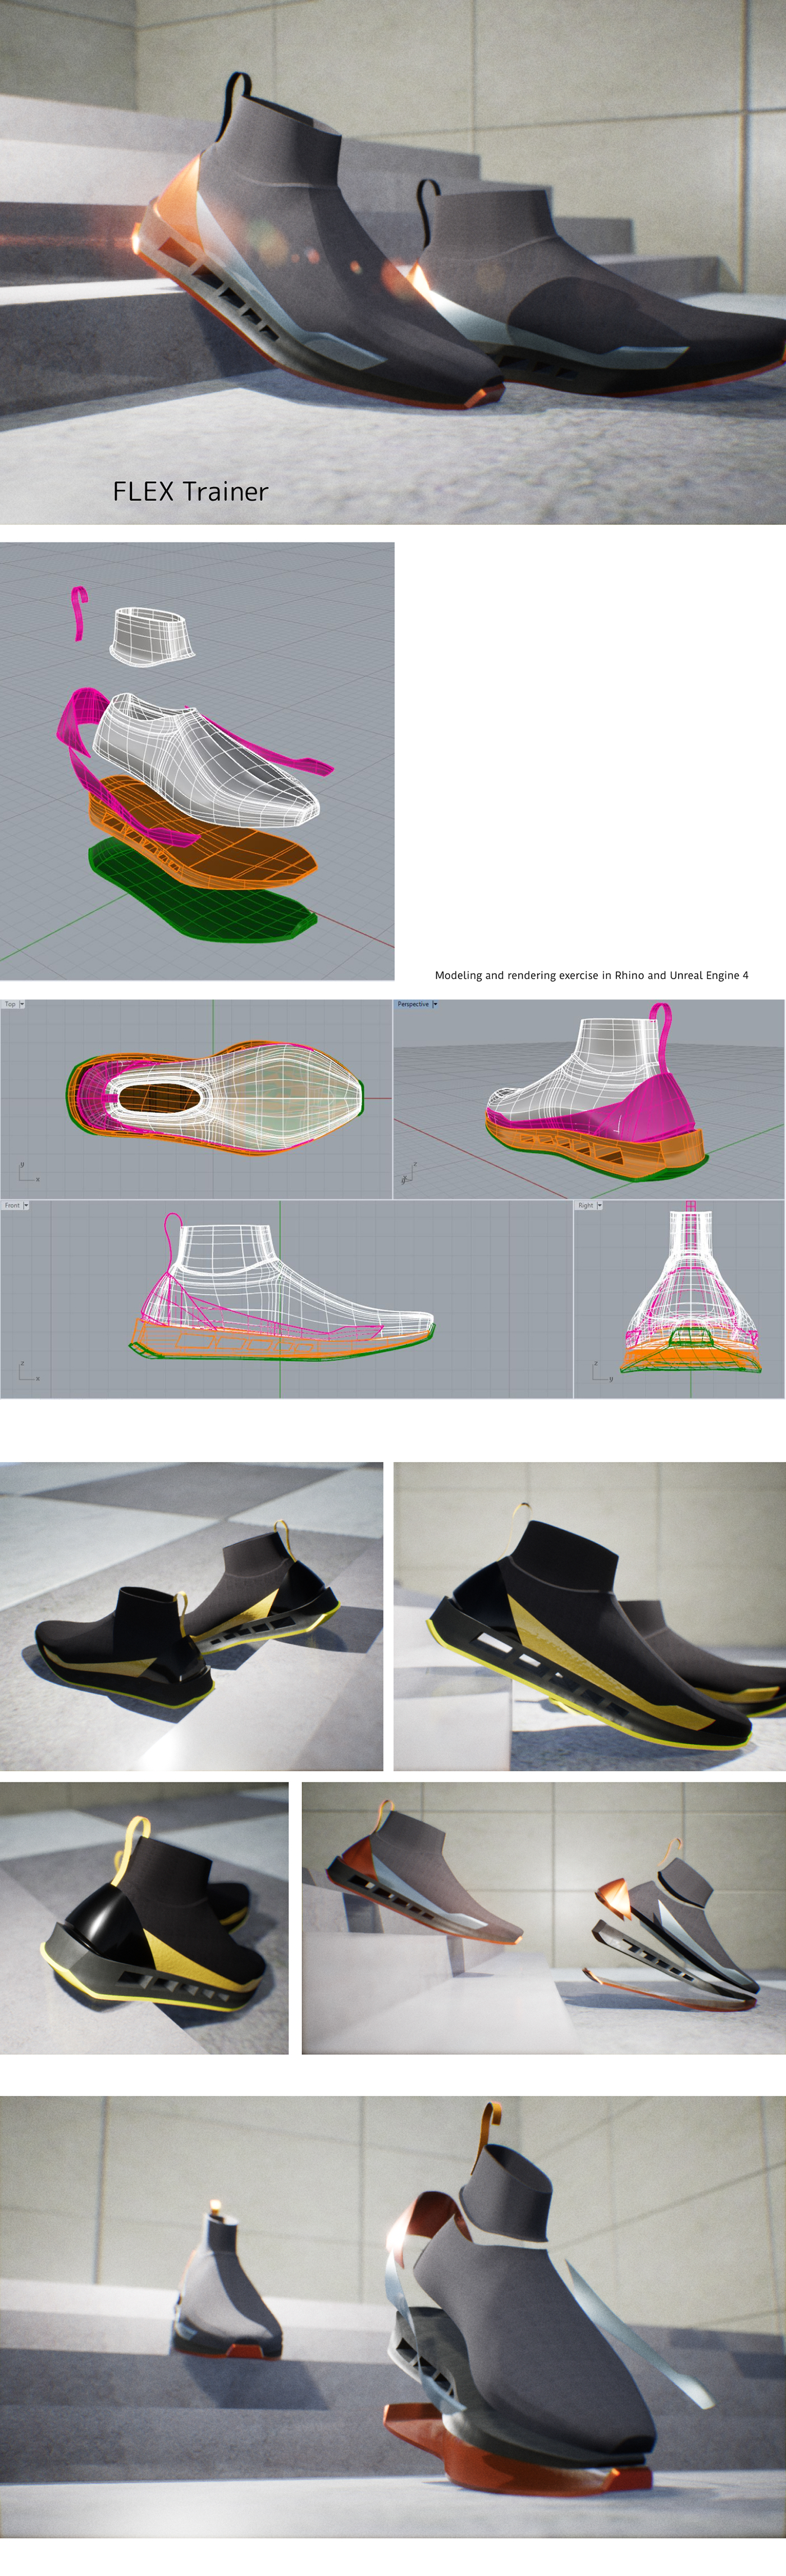 footwear Unreal Engine 4 Rhino sneaker Render